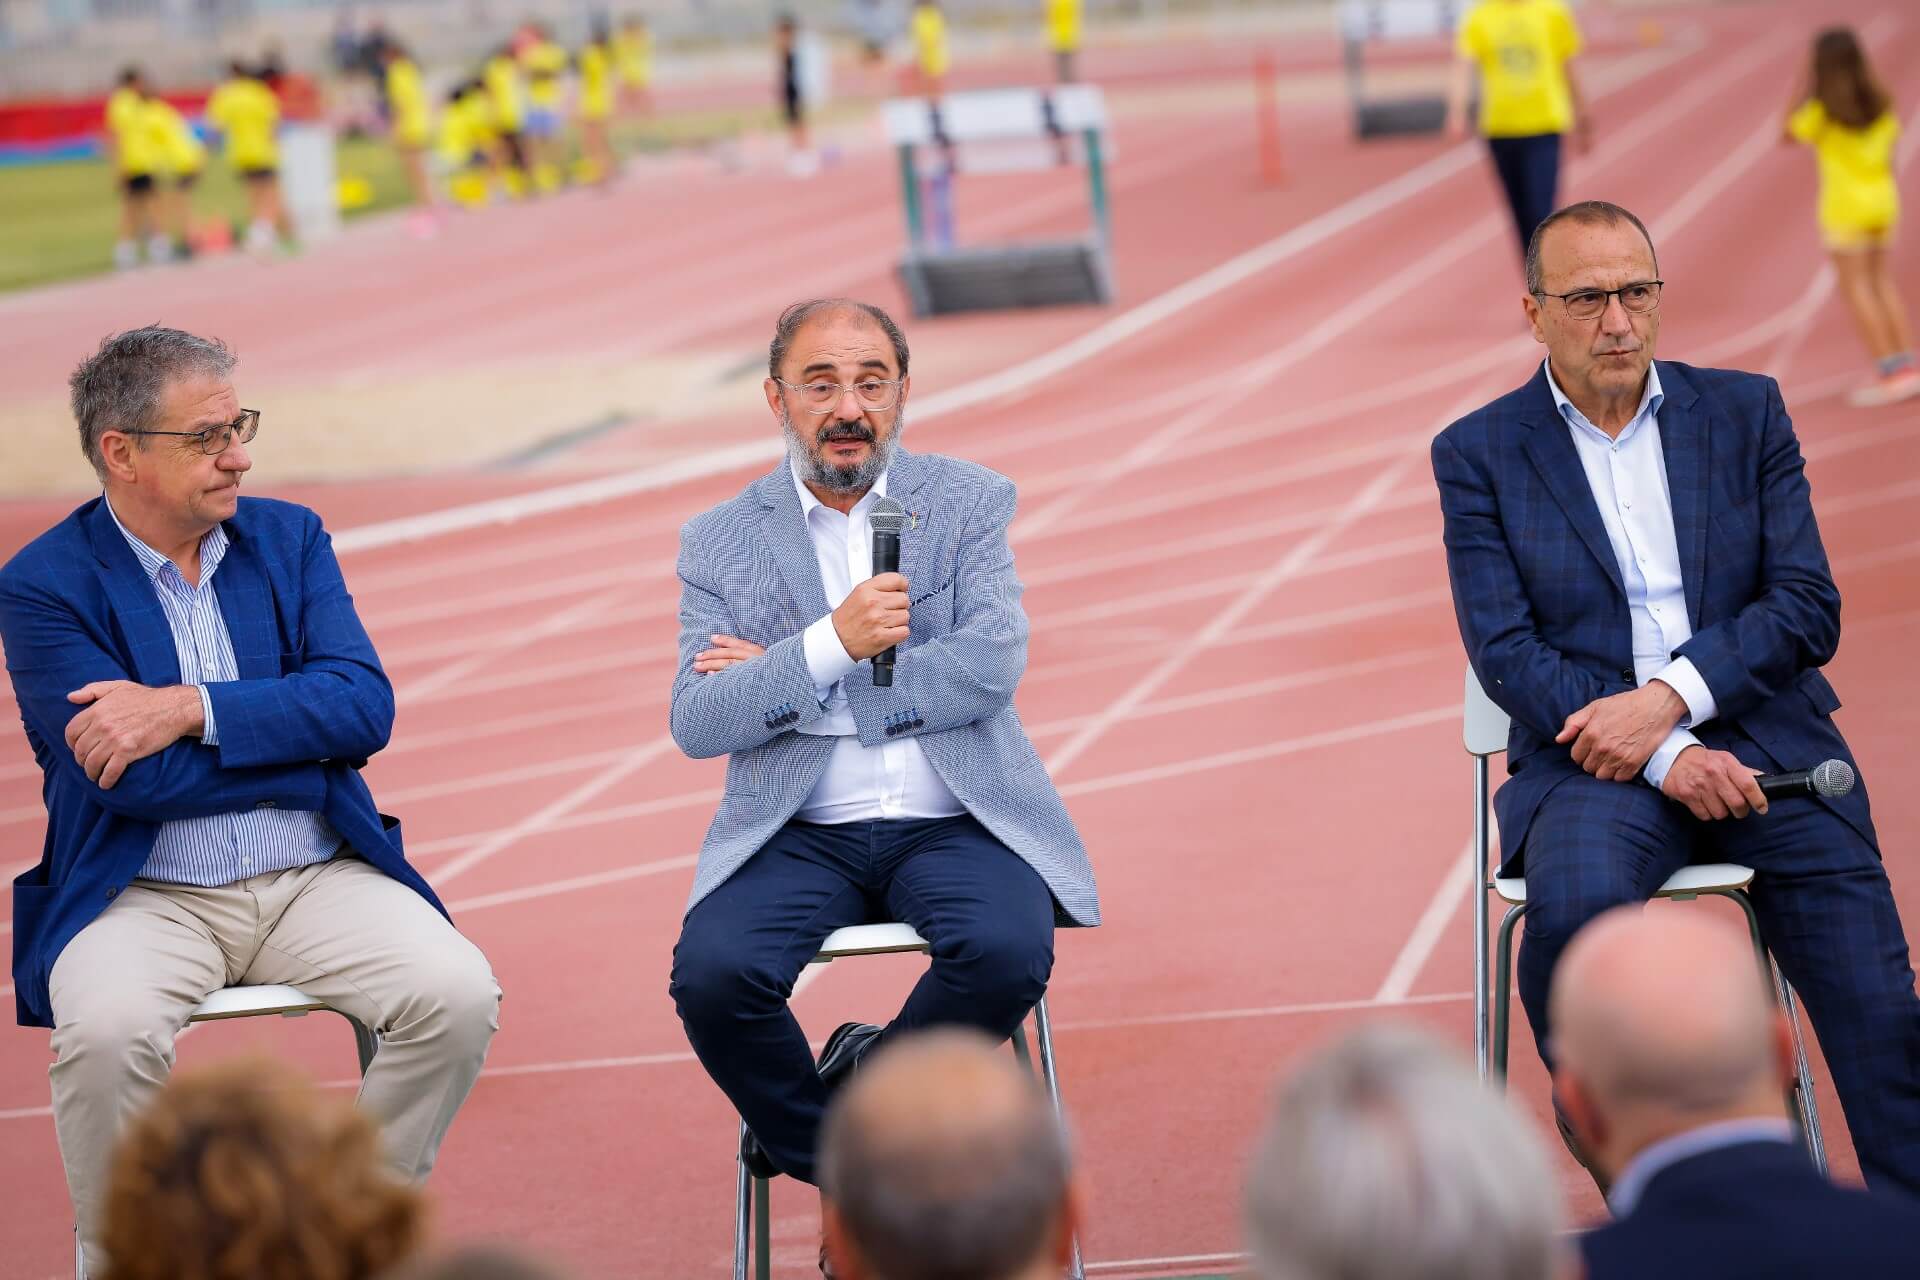 Javier Lambán anuncia un plan para la mejora de la calidad del deporte en Aragón que prevé duplicar el presupuesto y crear becas para deportistas de alto rendimiento de 20.000 euros